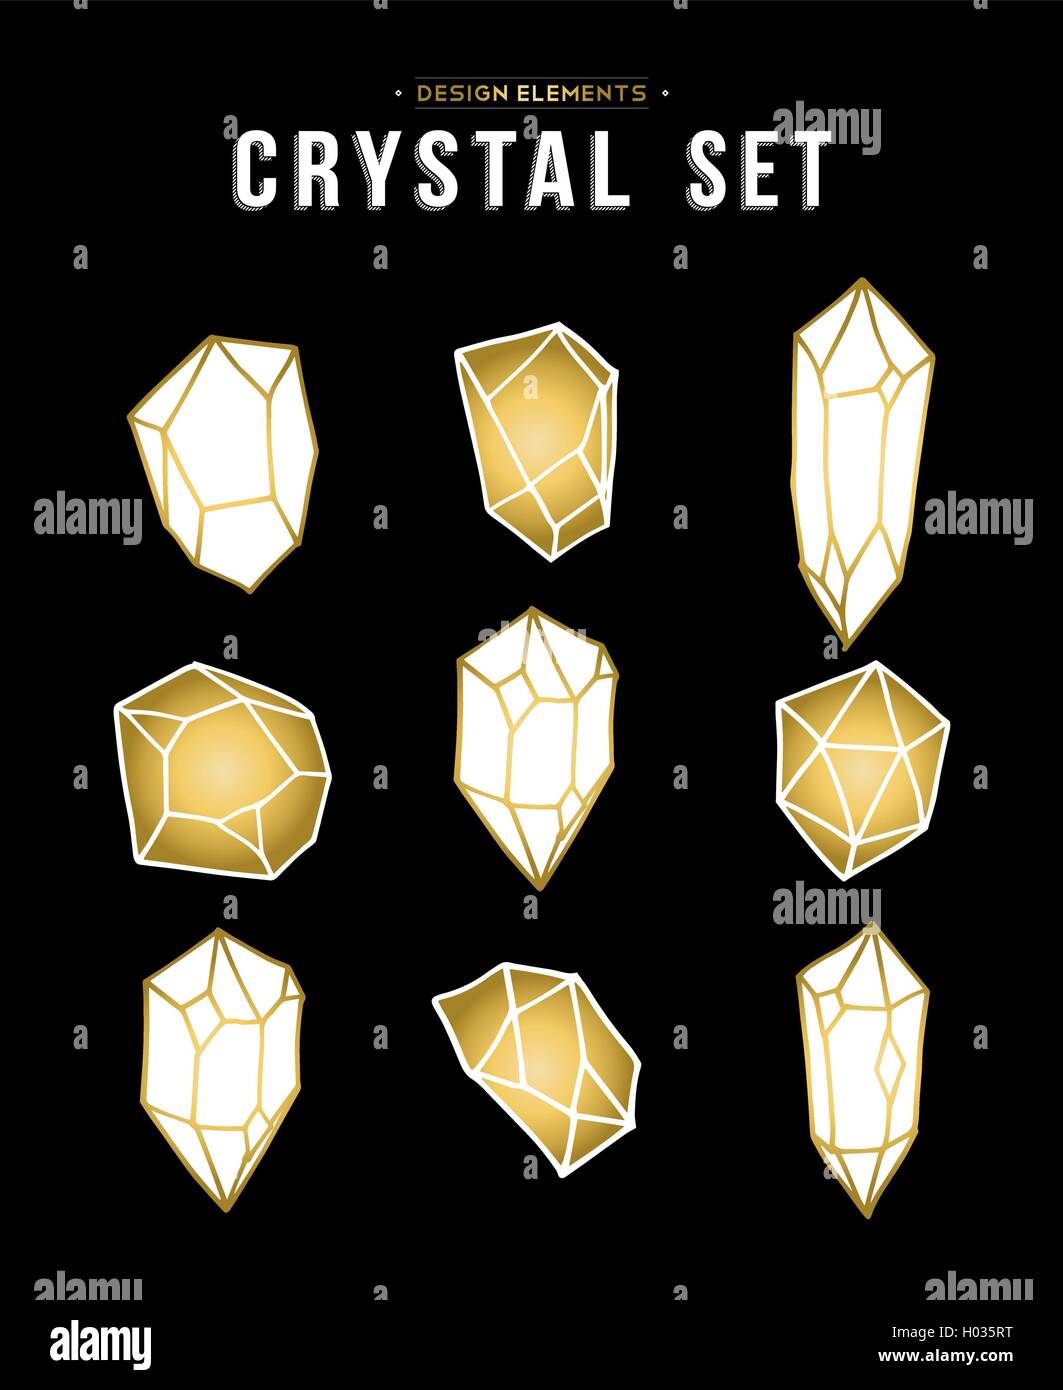 Ensemble de couleur or crystal minéral des éléments en pierre, simple main appelée diamond rock icons collection. Vecteur EPS10. Illustration de Vecteur